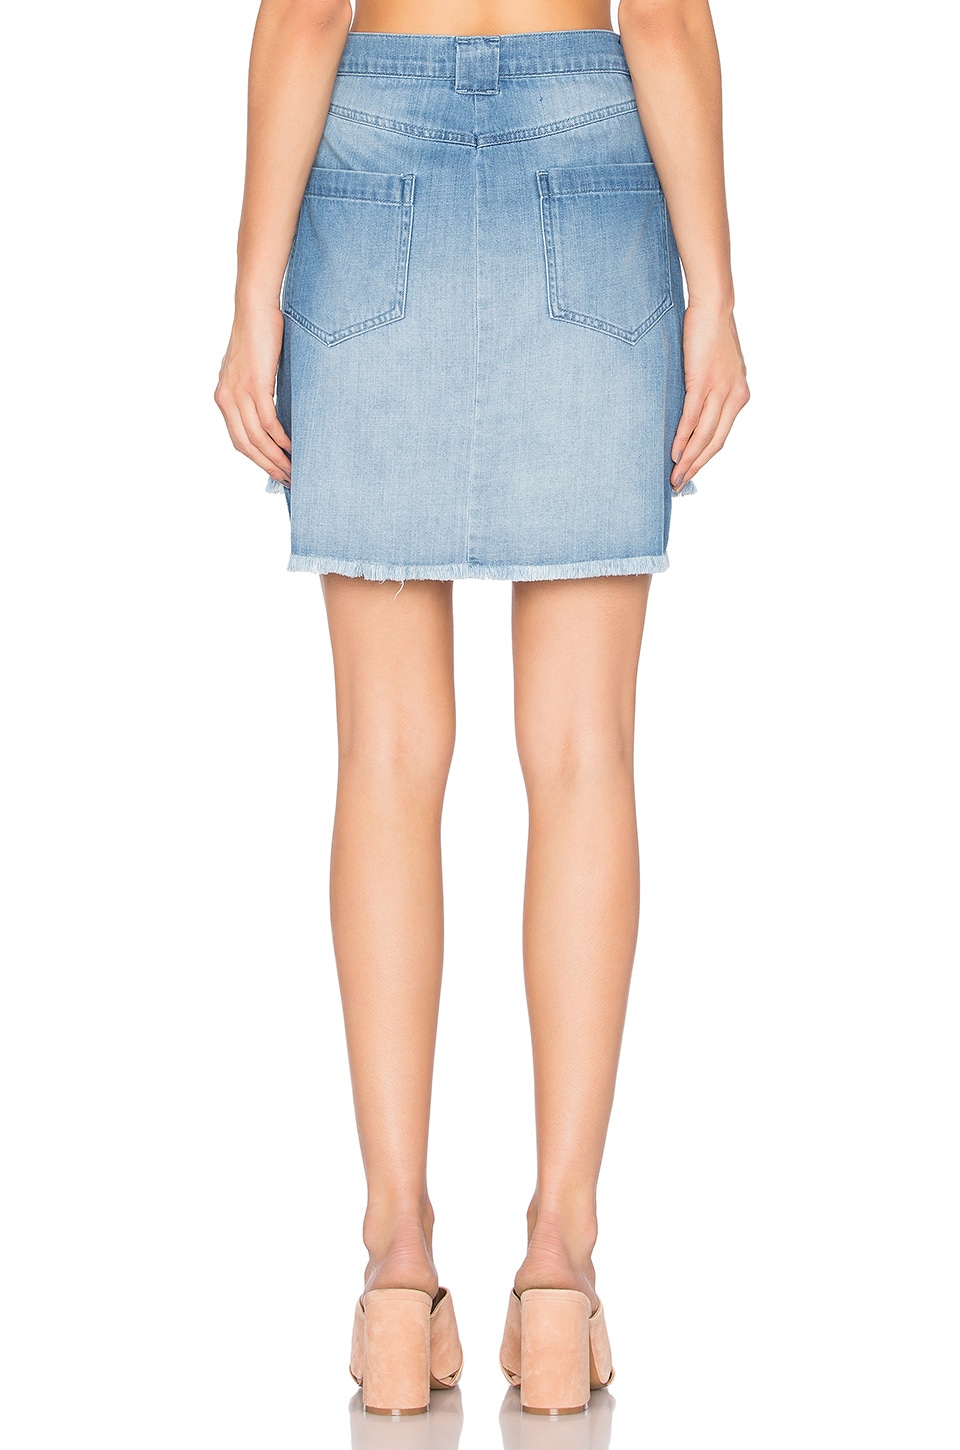 BELLA DAHL Button Front Denim Skirt in Indigo Wash | ModeSens